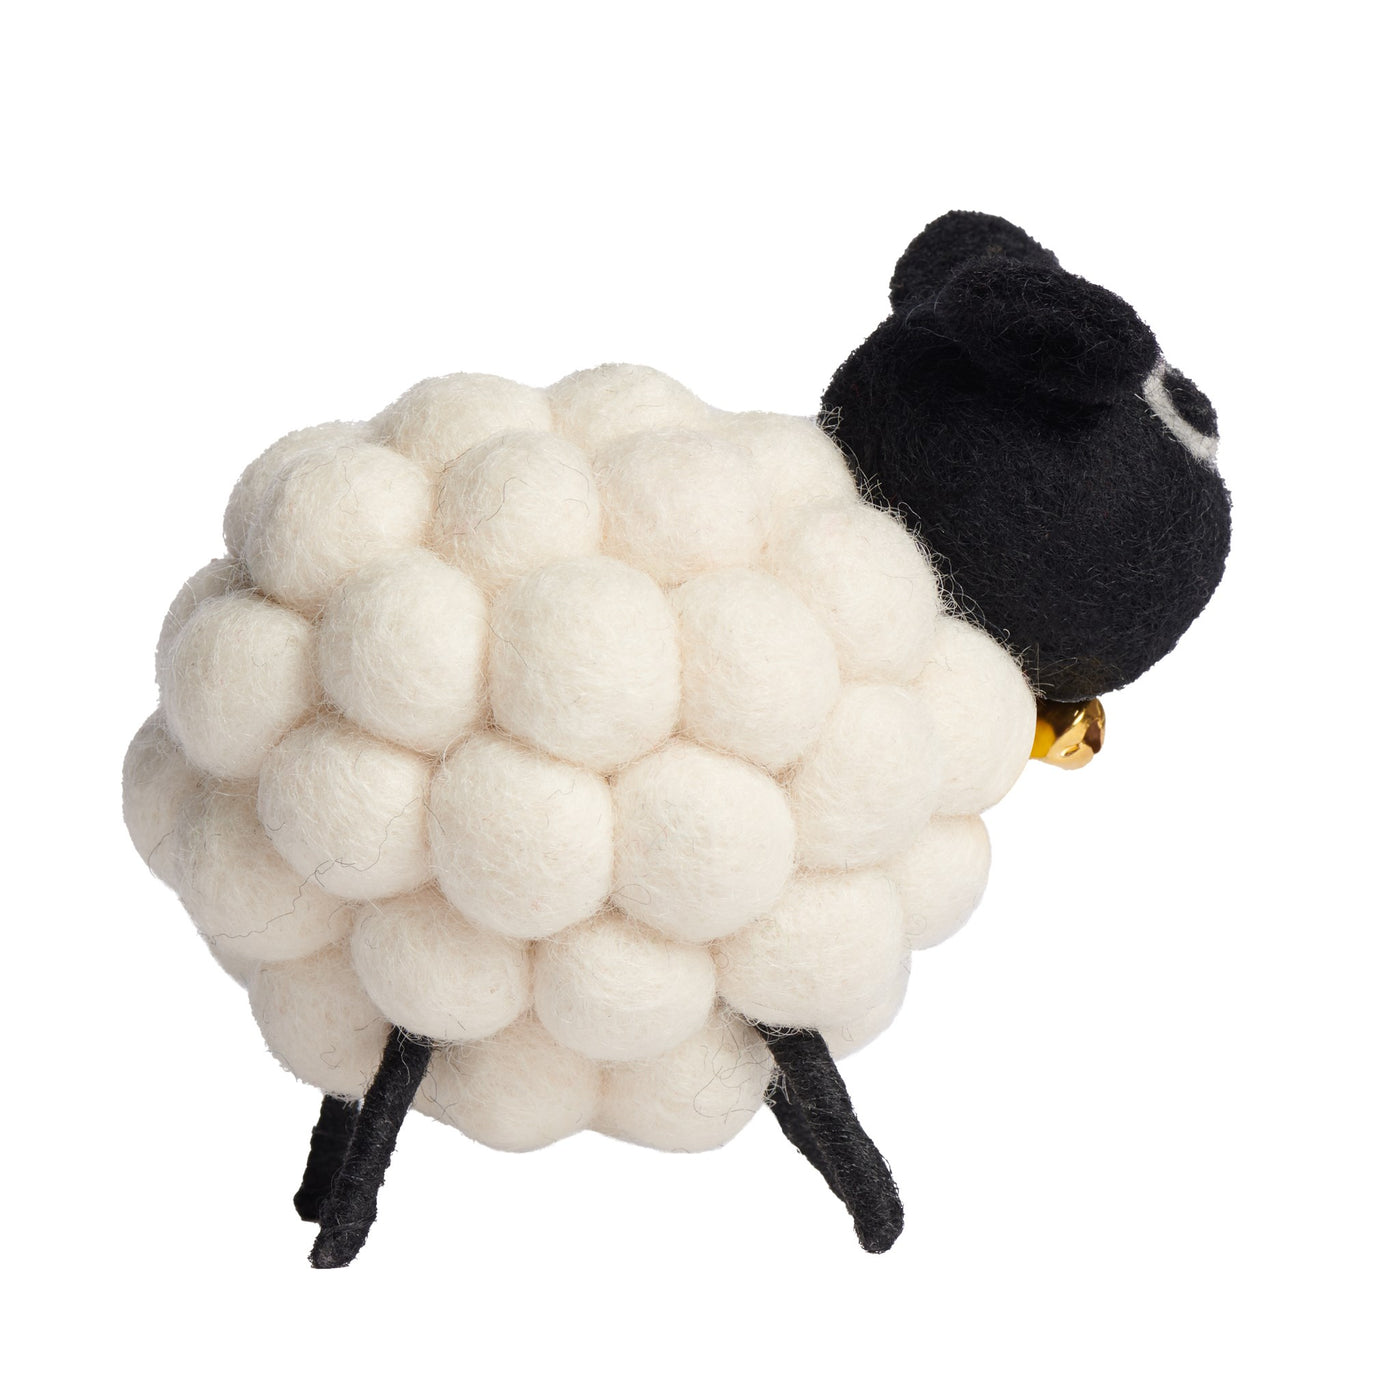 Modwool Felt Sheep